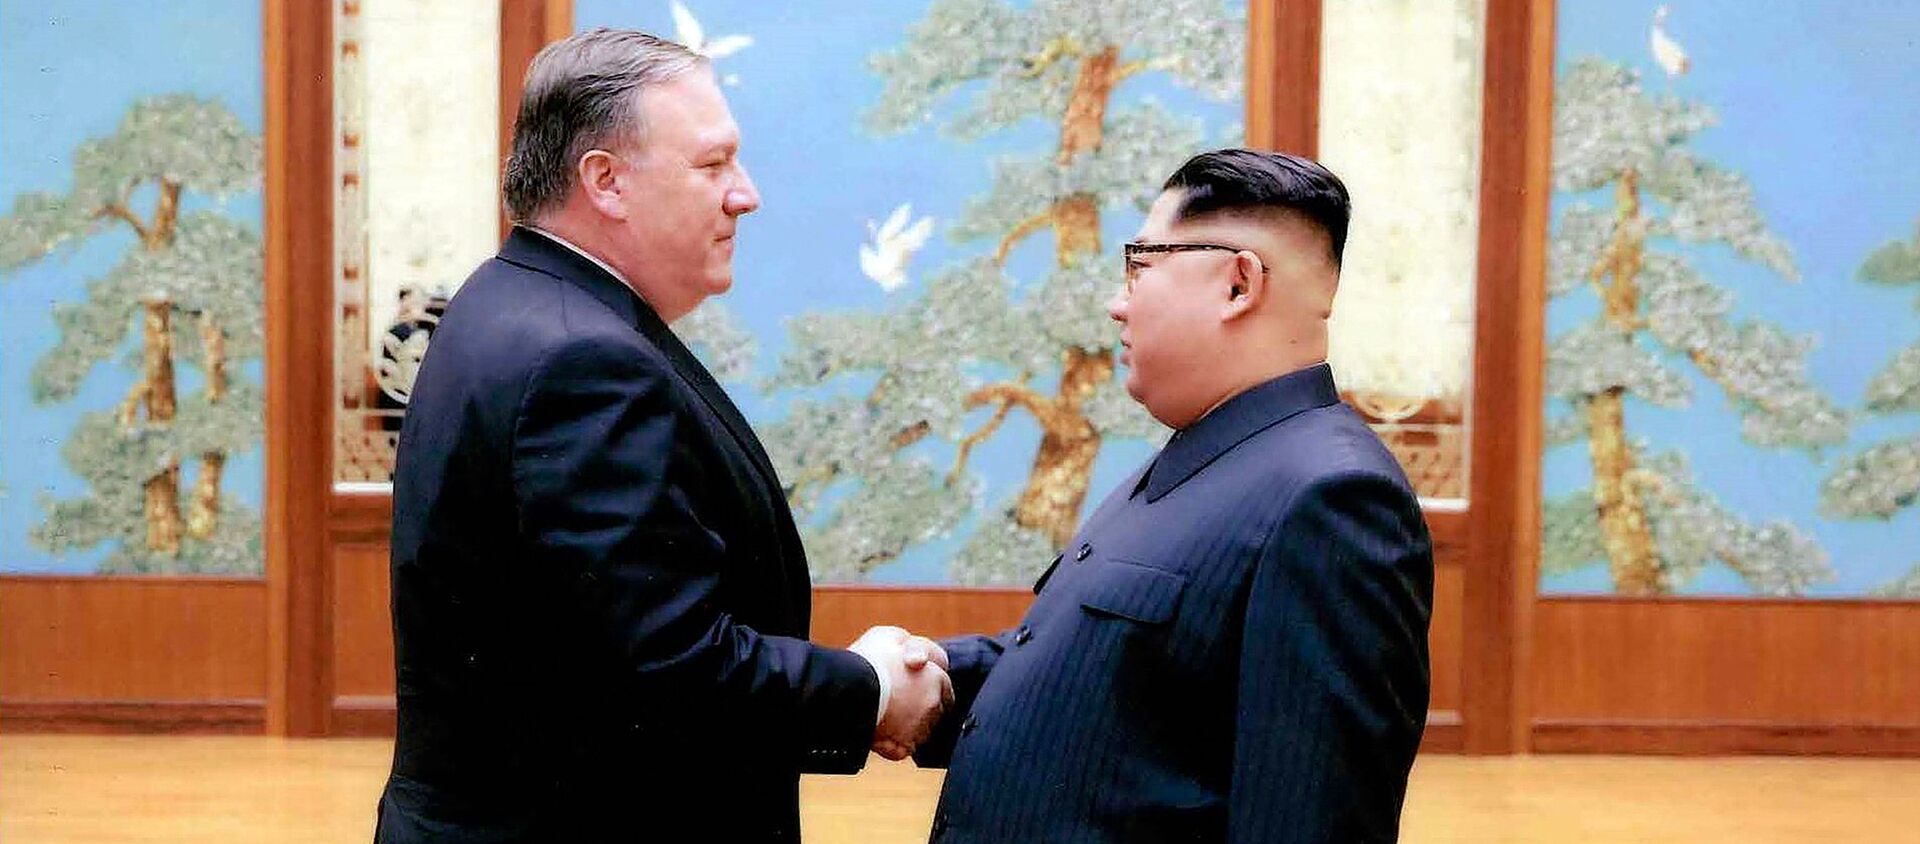 Mike Pompeo, secretario de Estado de EEUU, y Kim Jong-un, líder norcoreano - Sputnik Mundo, 1920, 18.07.2020